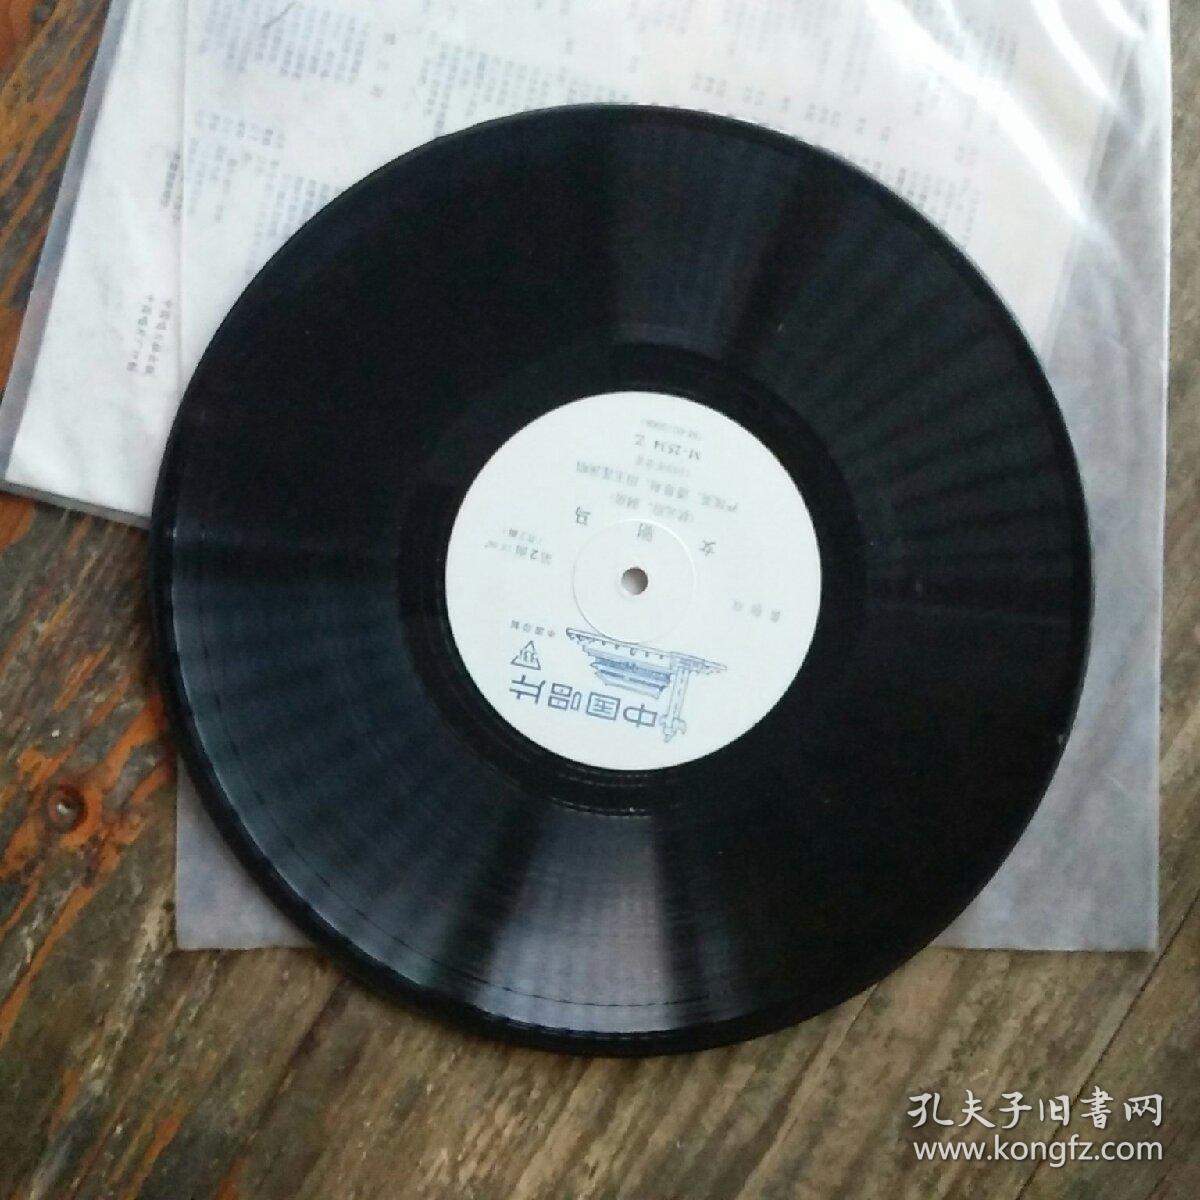 80年代黑塑胶密戏曲唱片黄梅戏女驸马严凤英